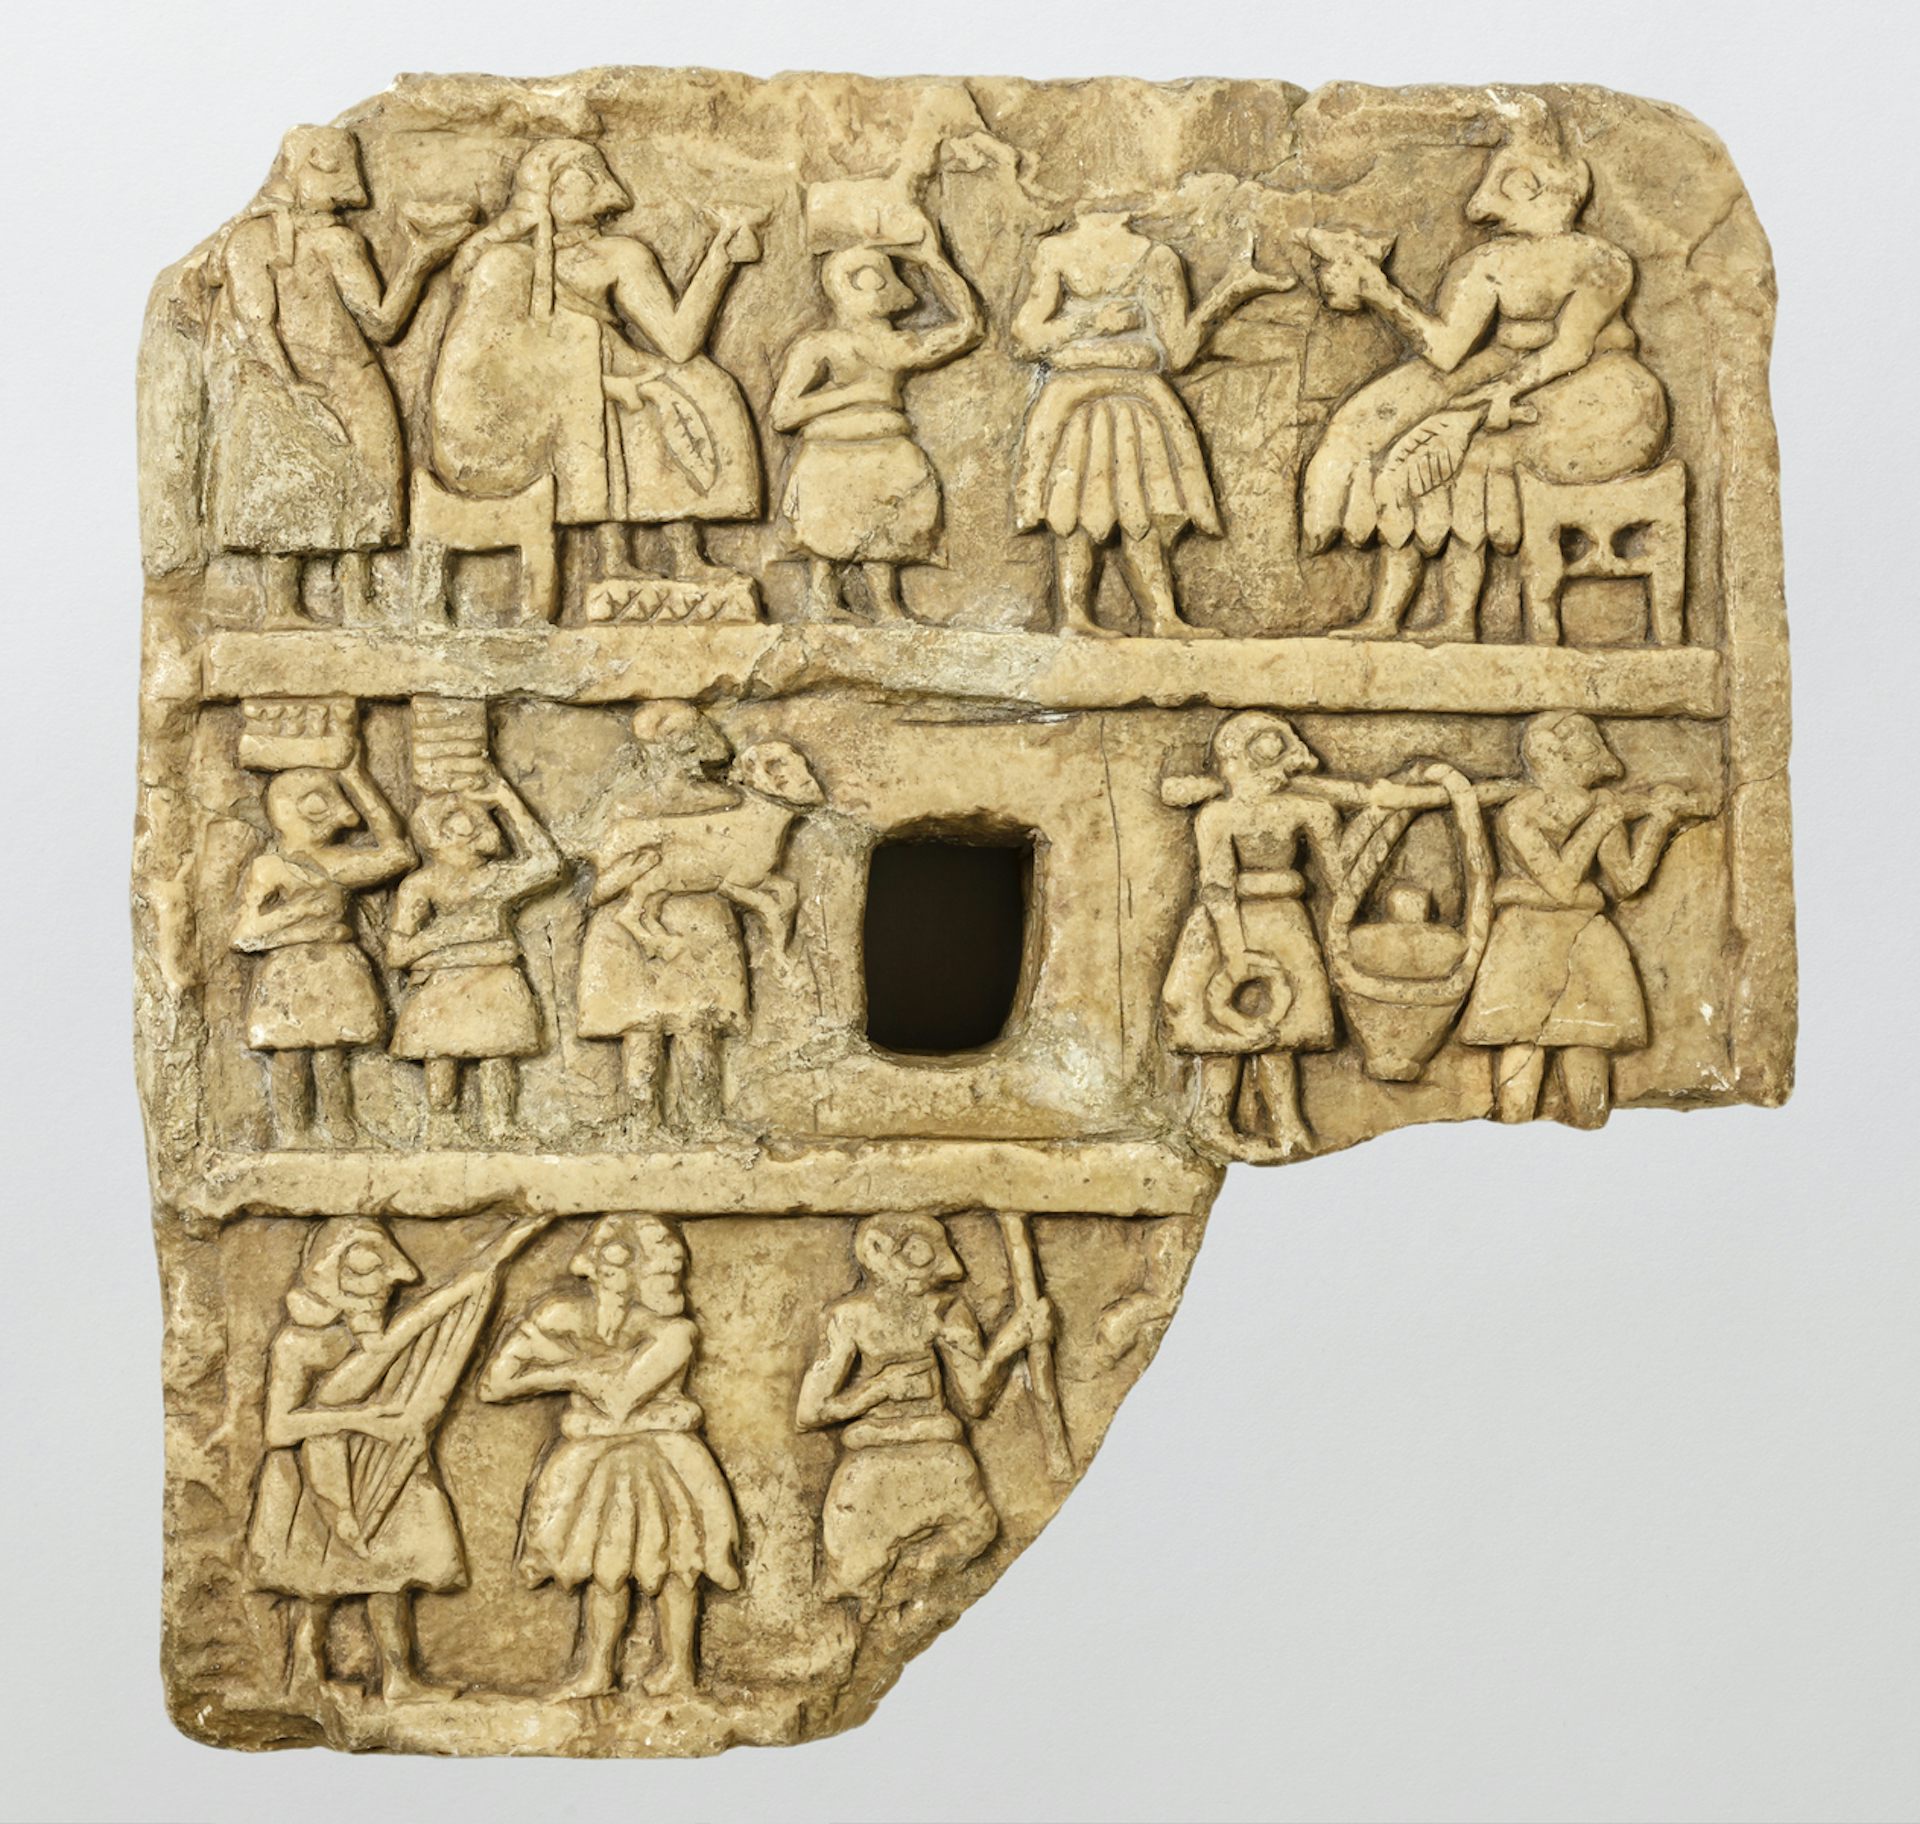 Kamienna tabliczka przedstawiająca zgromadzonych ludzi pijących z pucharów